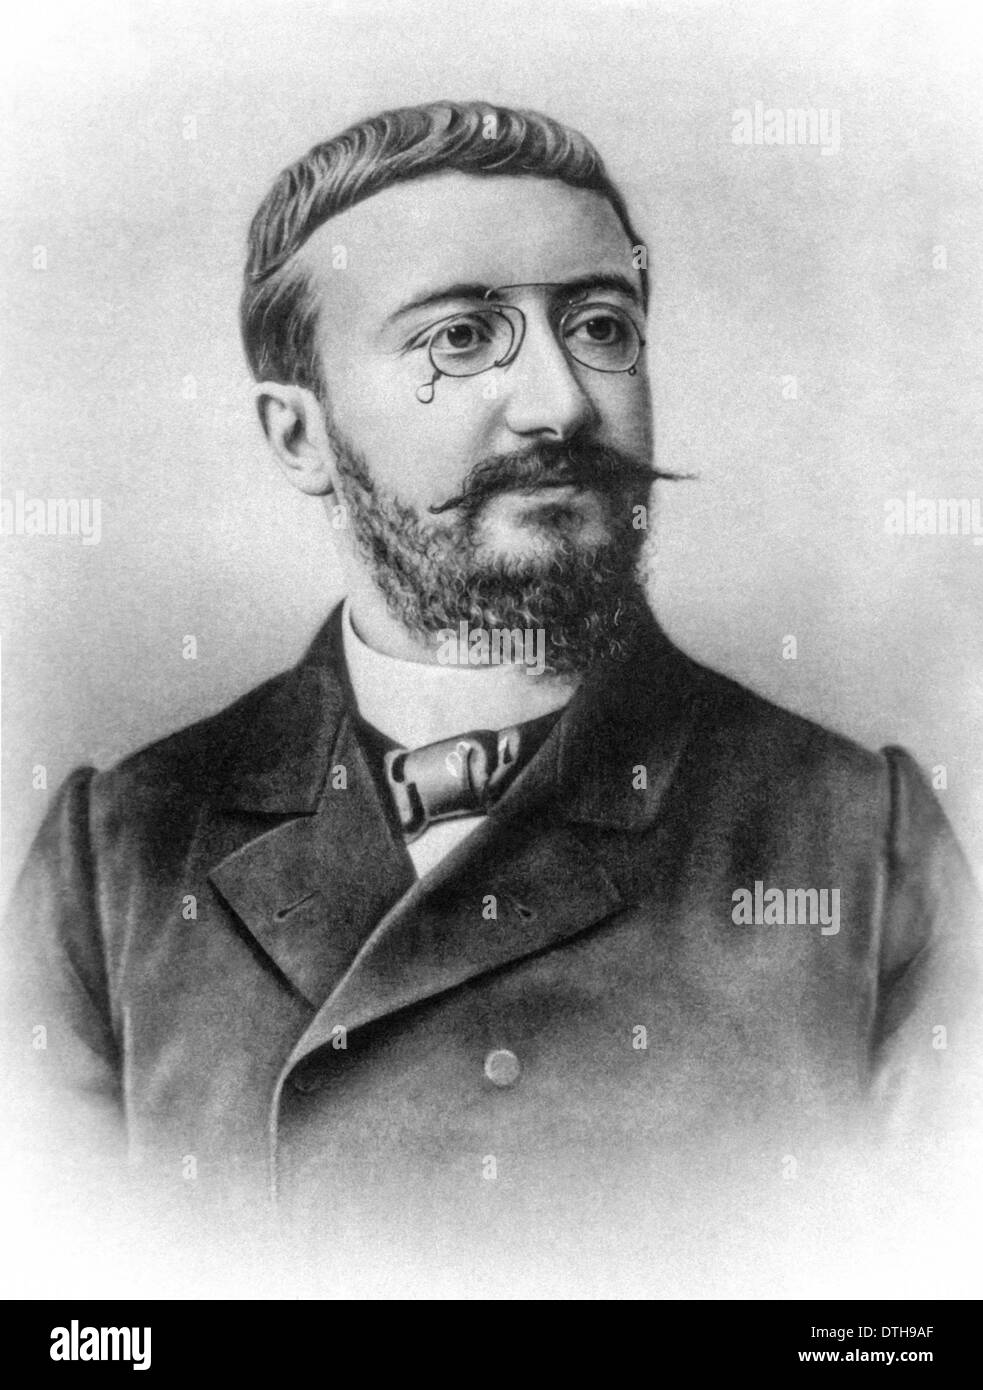 Alfred Binet (1857-1911) Le psychologue français qui a inventé le premier test d'intelligence (QI) à la Sorbonne (Université de Paris). Banque D'Images